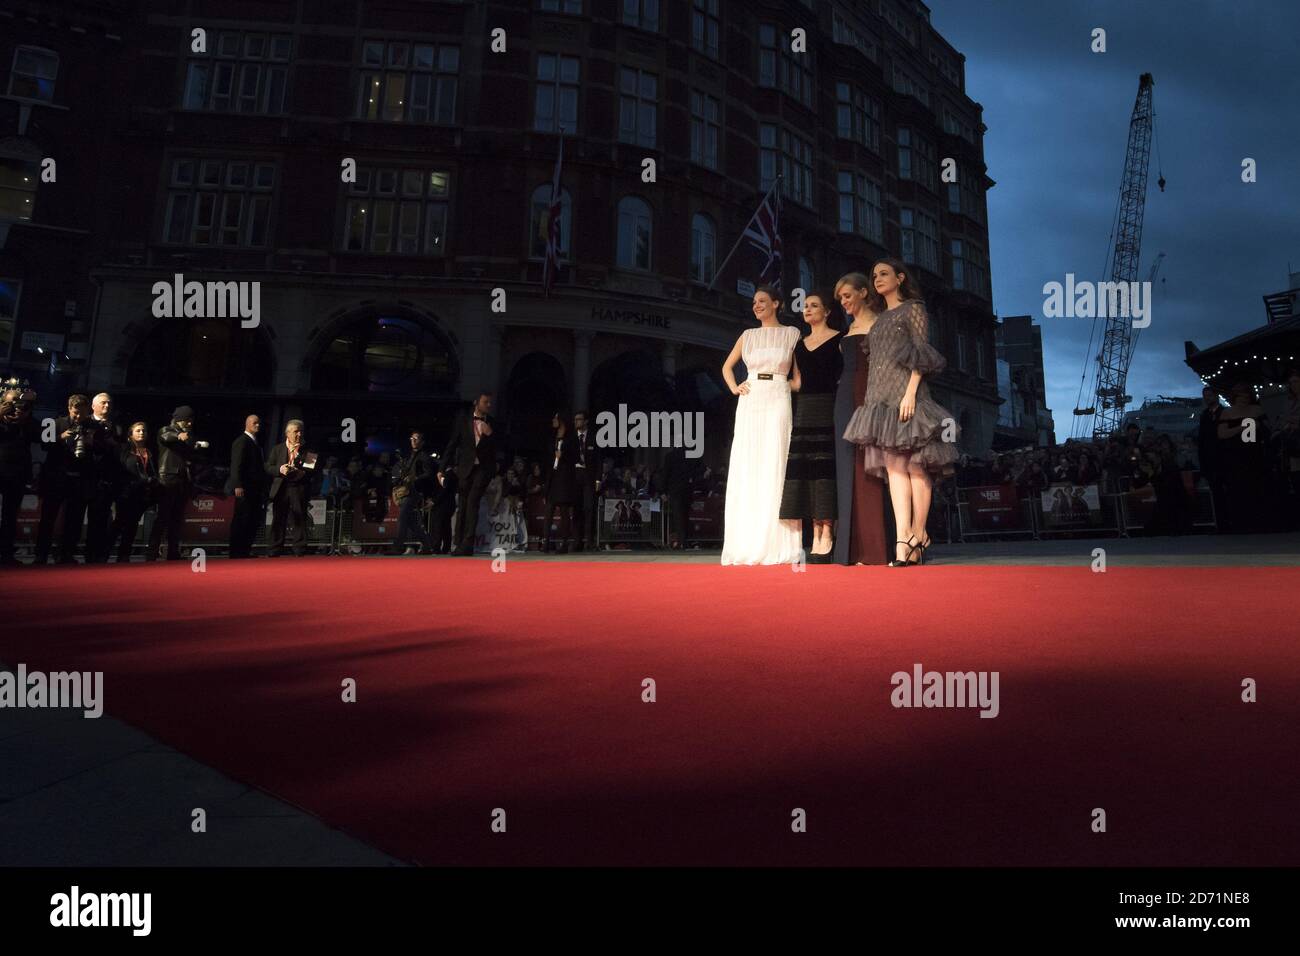 (De gauche à droite) Romola Garai, Helena Bonham carter, Anne-Marie Duff et Carey Mulligan assistent à la première suffragette qui a eu lieu lors du 59e BFI London film Festival à Odeon Cinema à Leicester Square, Londres. Banque D'Images